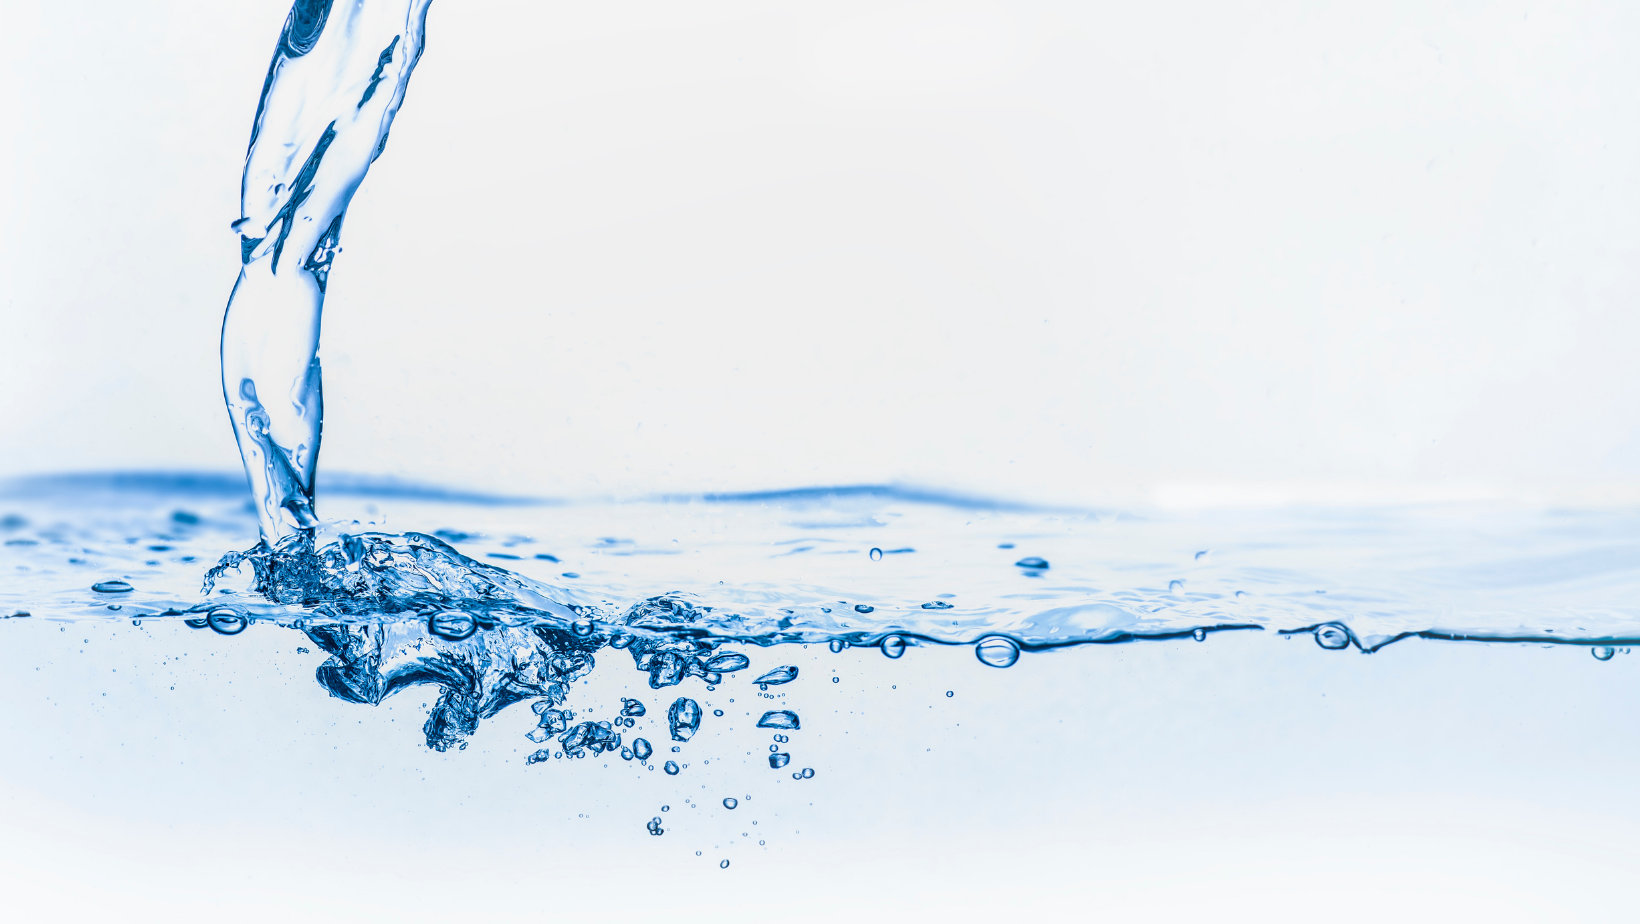 Água: um recurso precioso que exige ações coletivas e responsabilidade individual